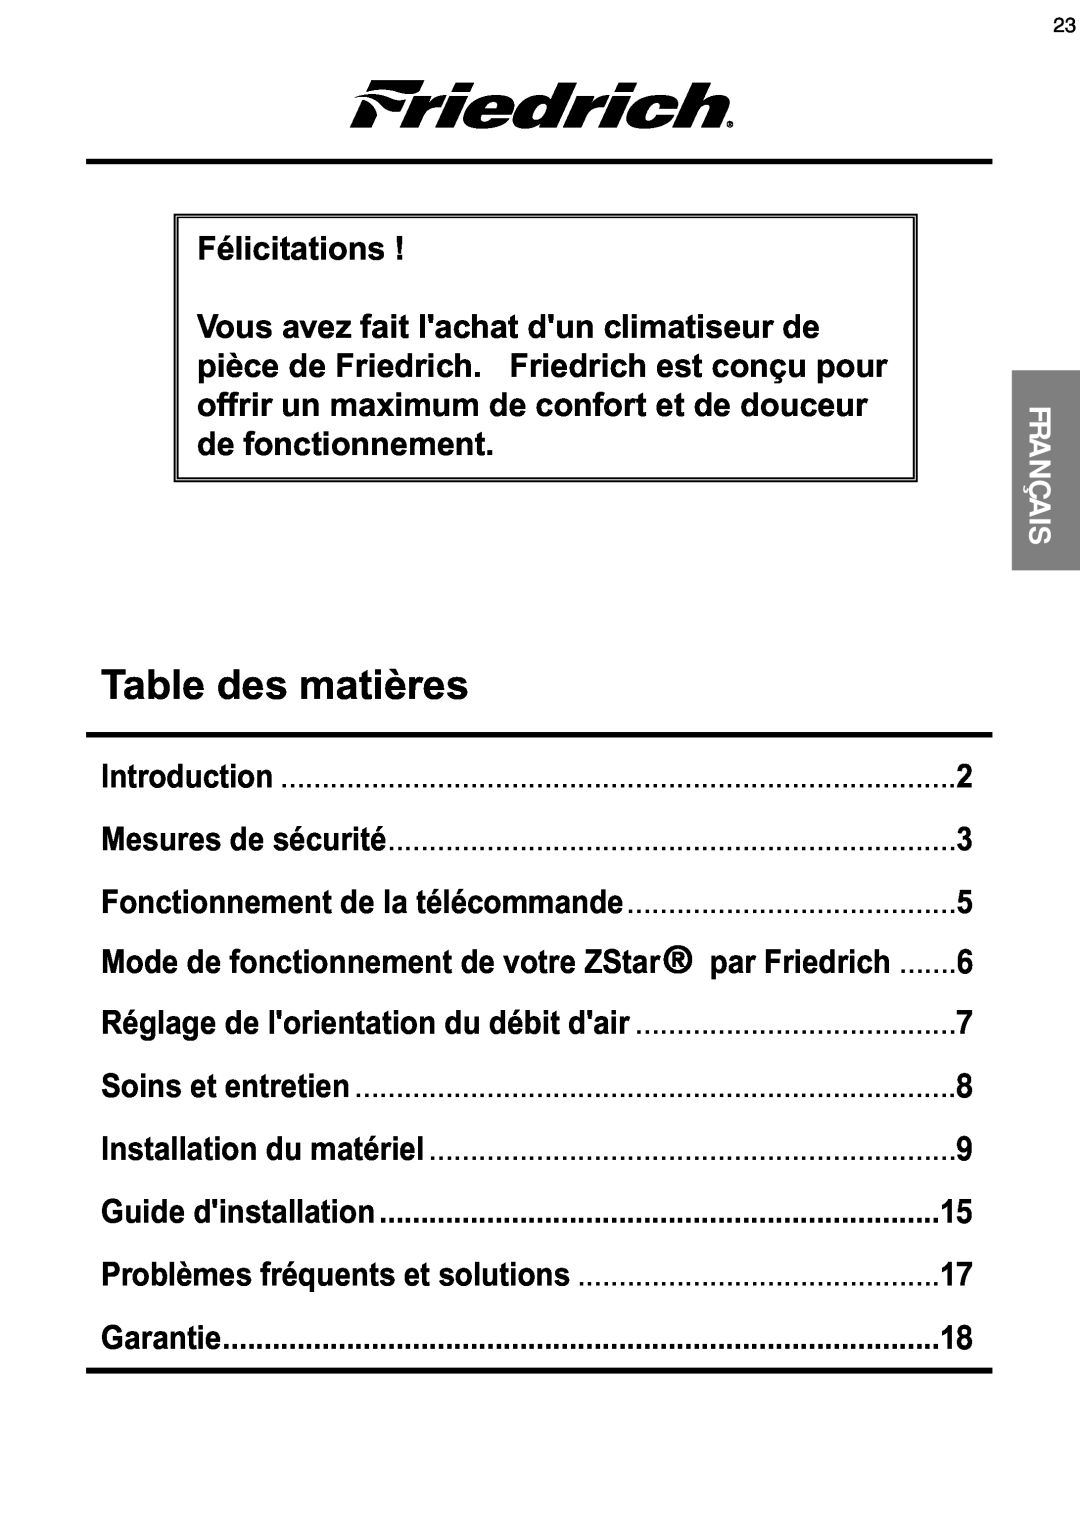 Friedrich CP08 Table des matières, Français, Introduction, Mesures de sécurité, Fonctionnement de la télécommande 